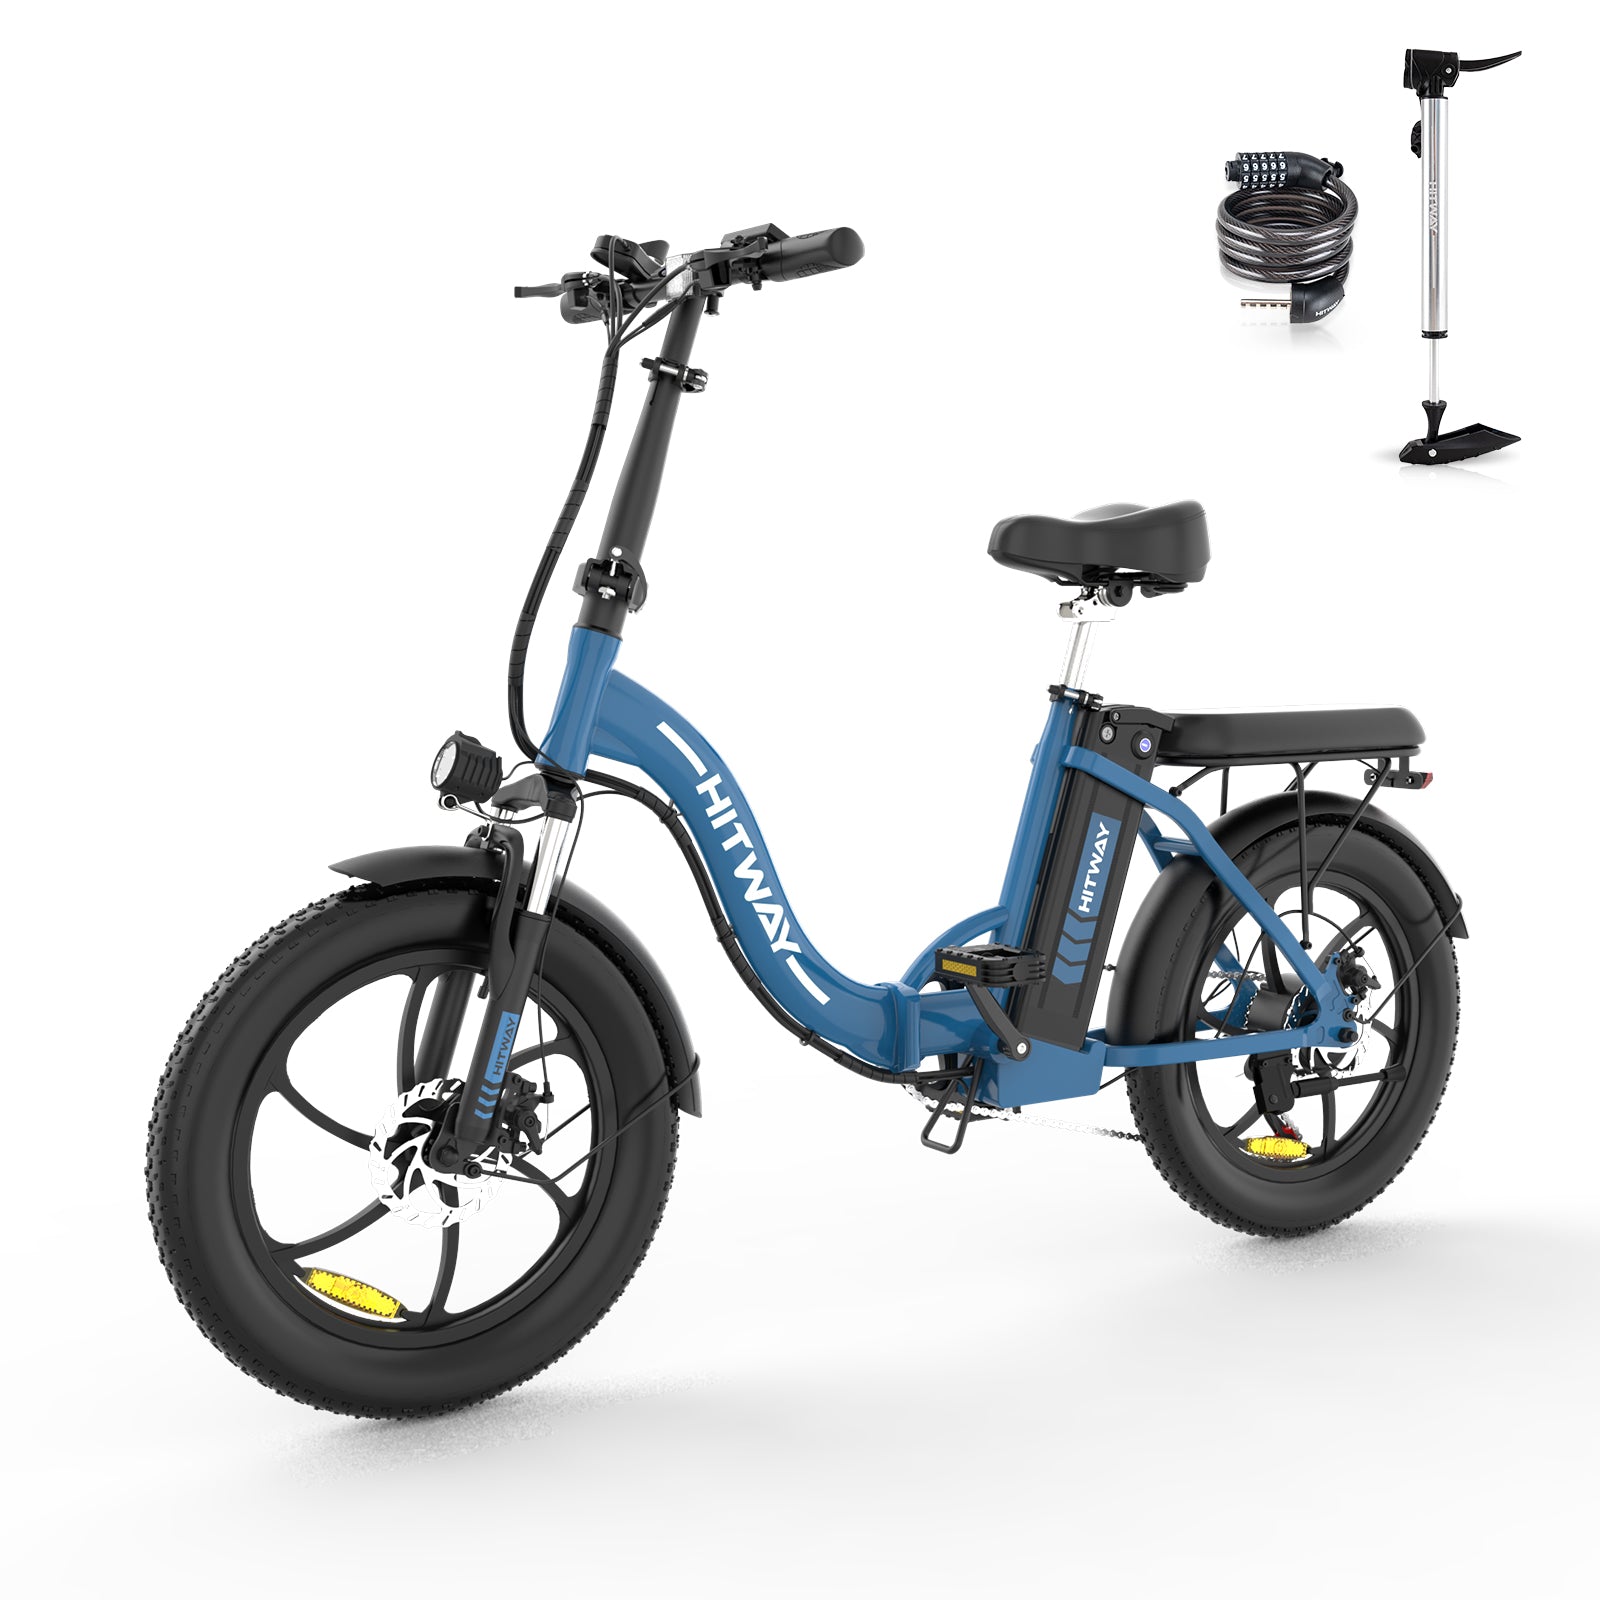 La oferta de Wallmart, 1.500€ por una bicicleta eléctrica de